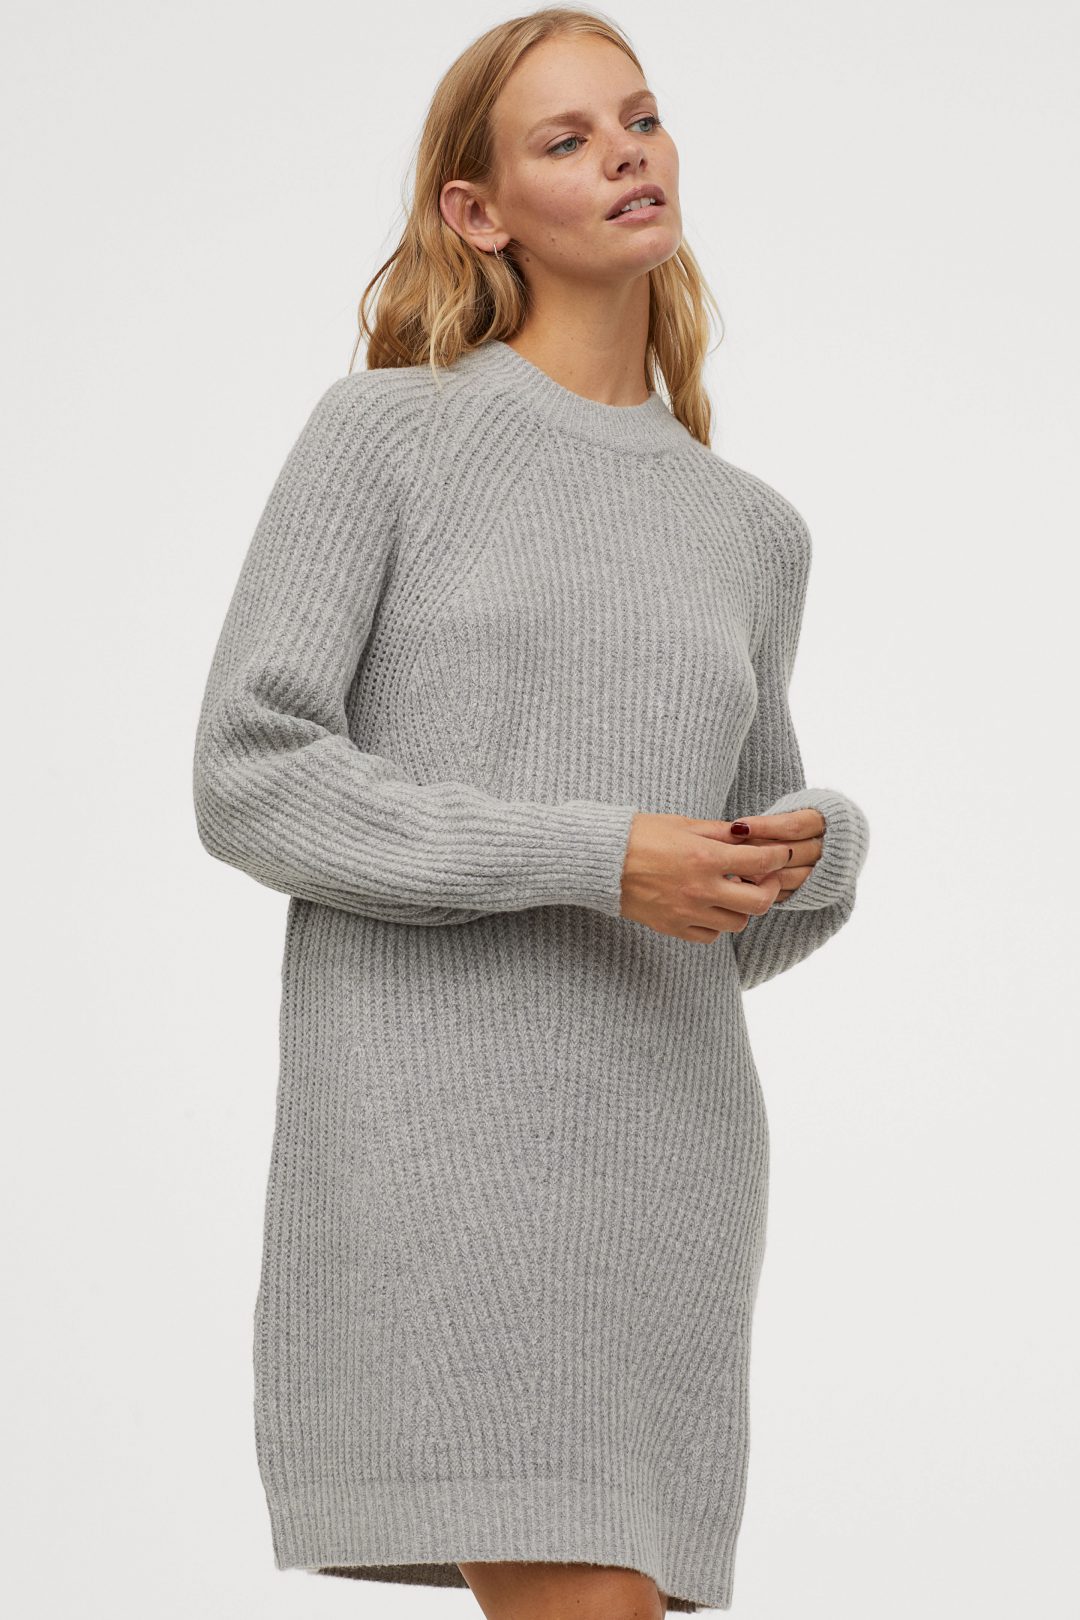 HM pulover haljina zima 2019. 